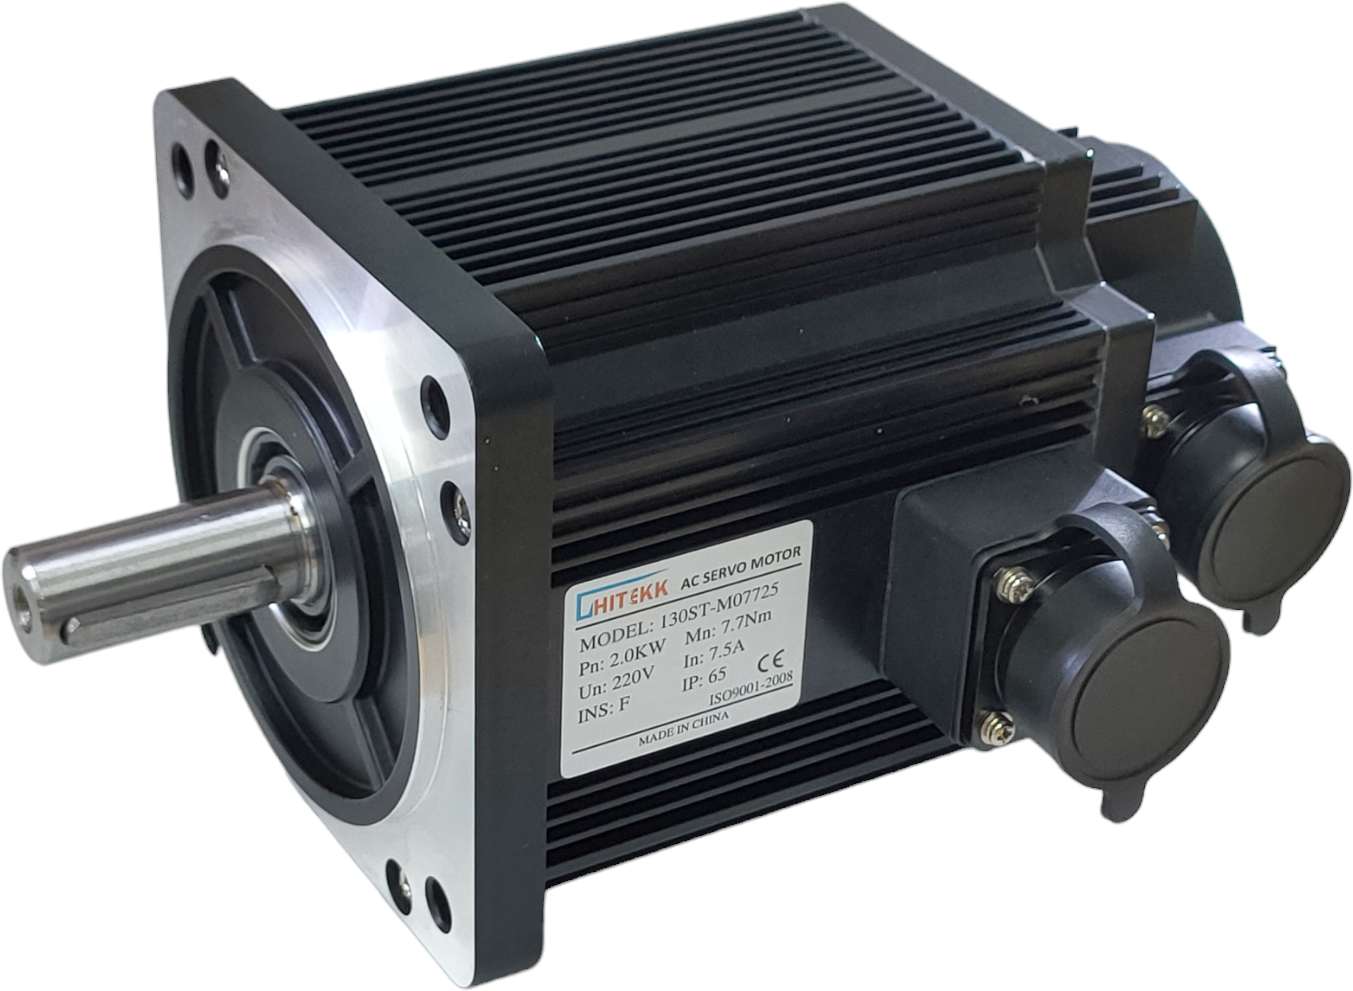 AC Servo Motor Hitekk, 130HS-M07725, 2kW, 220 VAC, encoder 2500 ppm